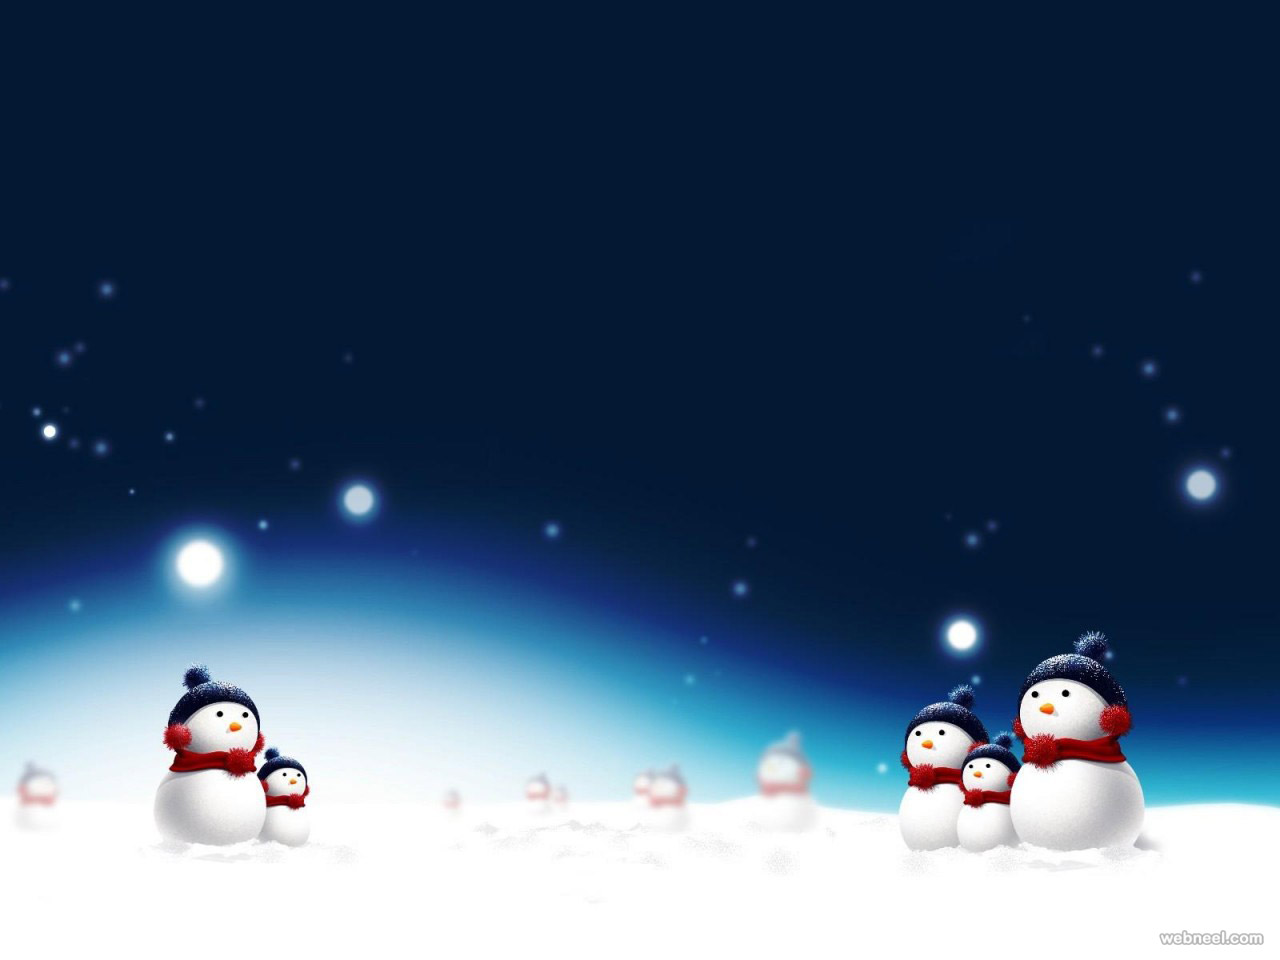 Snowman Christmas Wallpaper 10